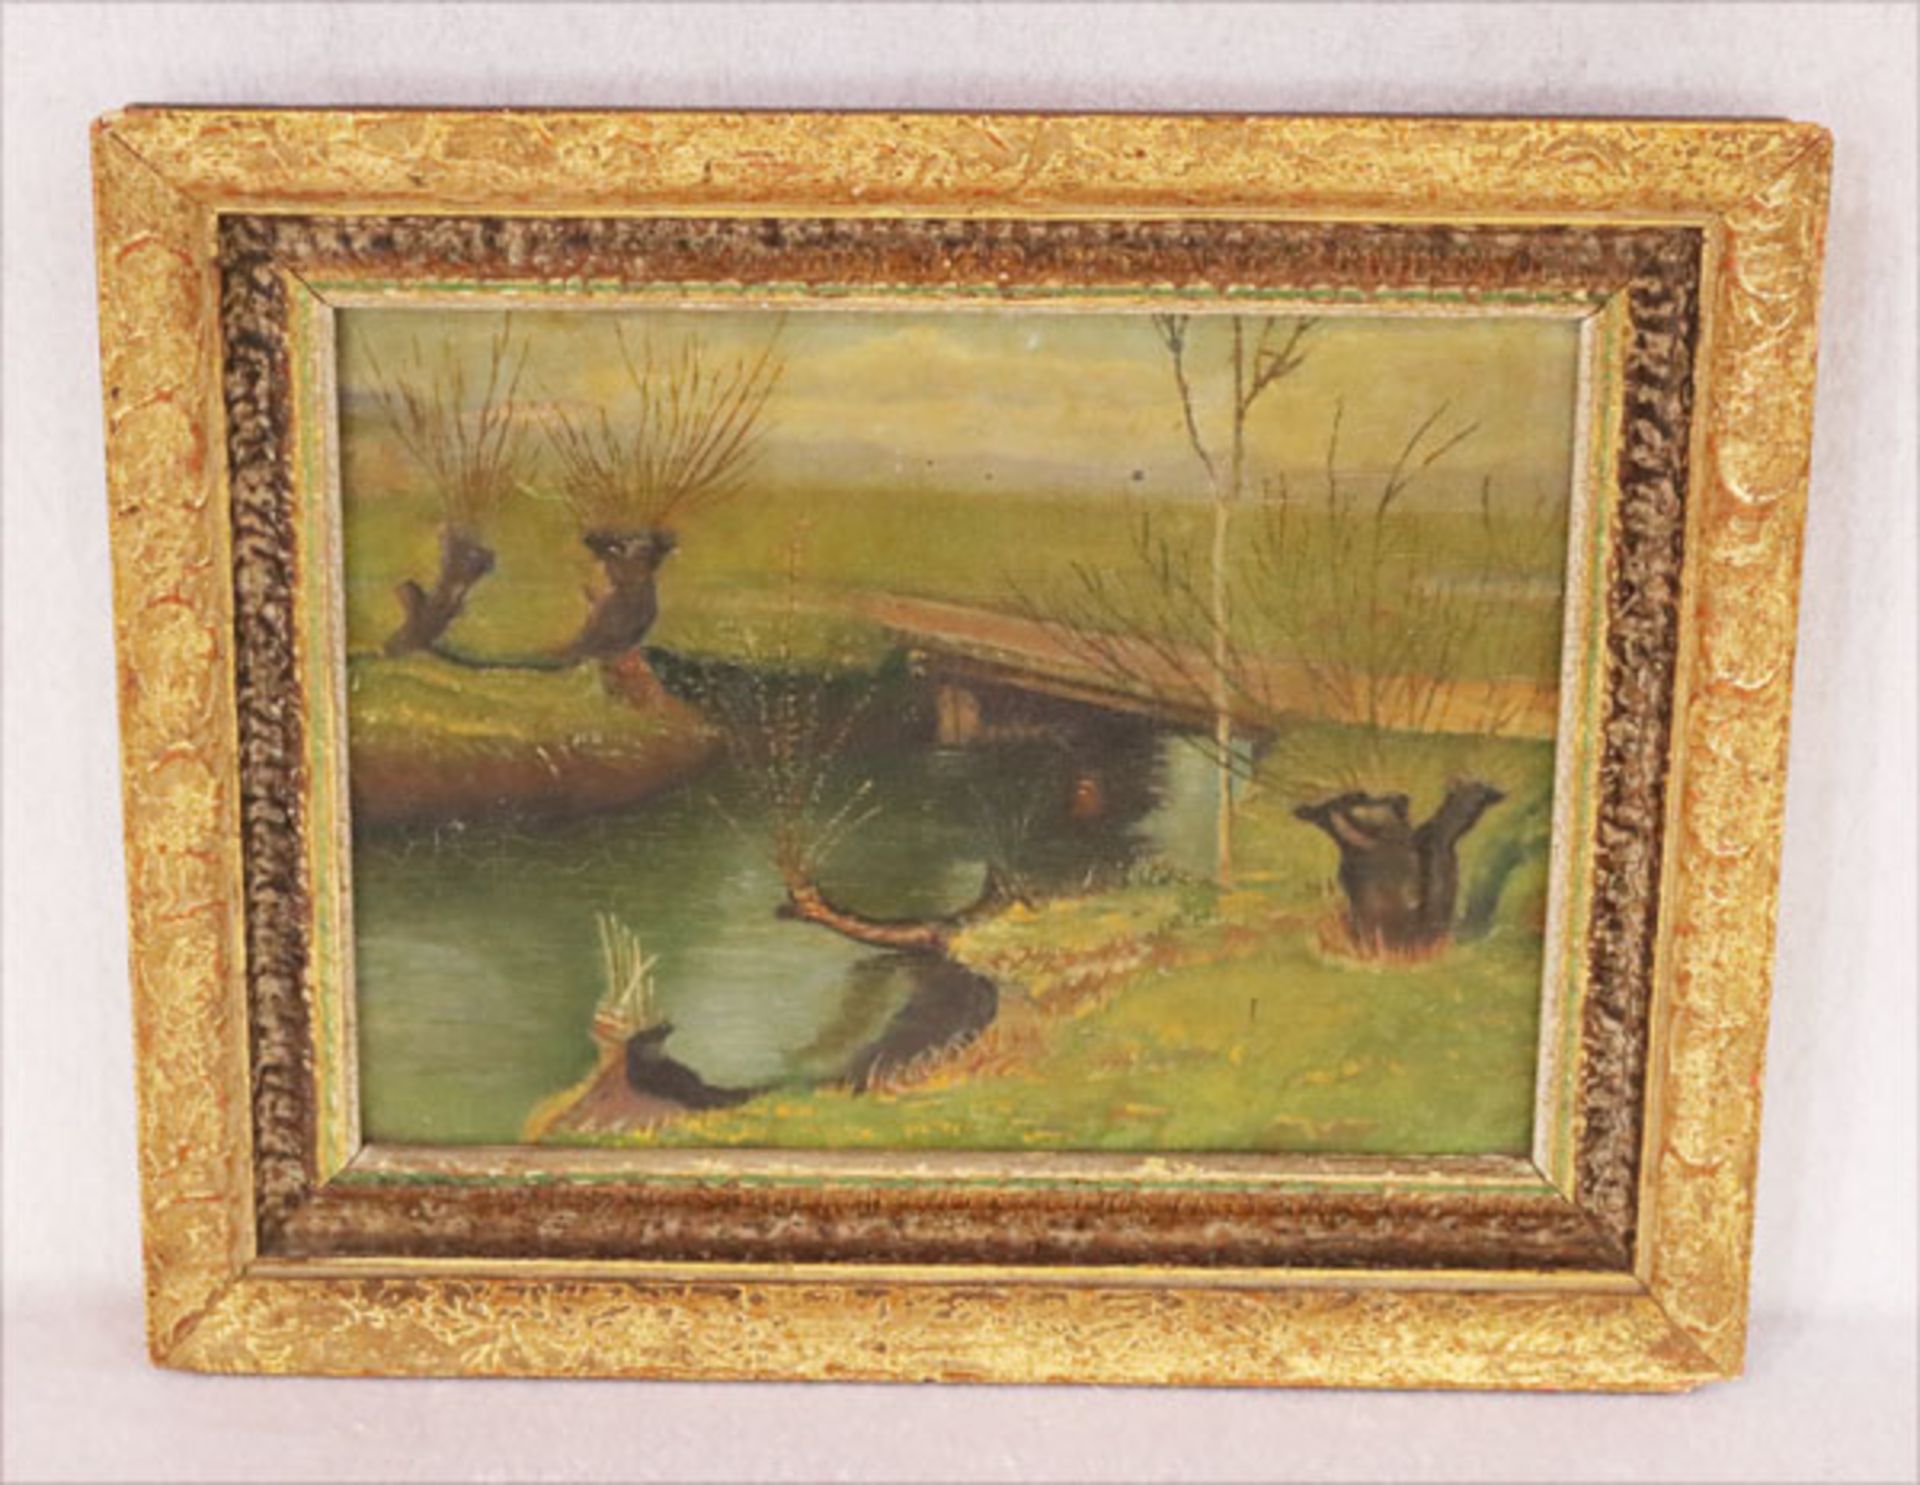 Gemälde ÖL/LW 'Bäume am Flußufer', gerahmt, Rahmen beschädigt, incl. Rahmen 35 cm x 28 cm